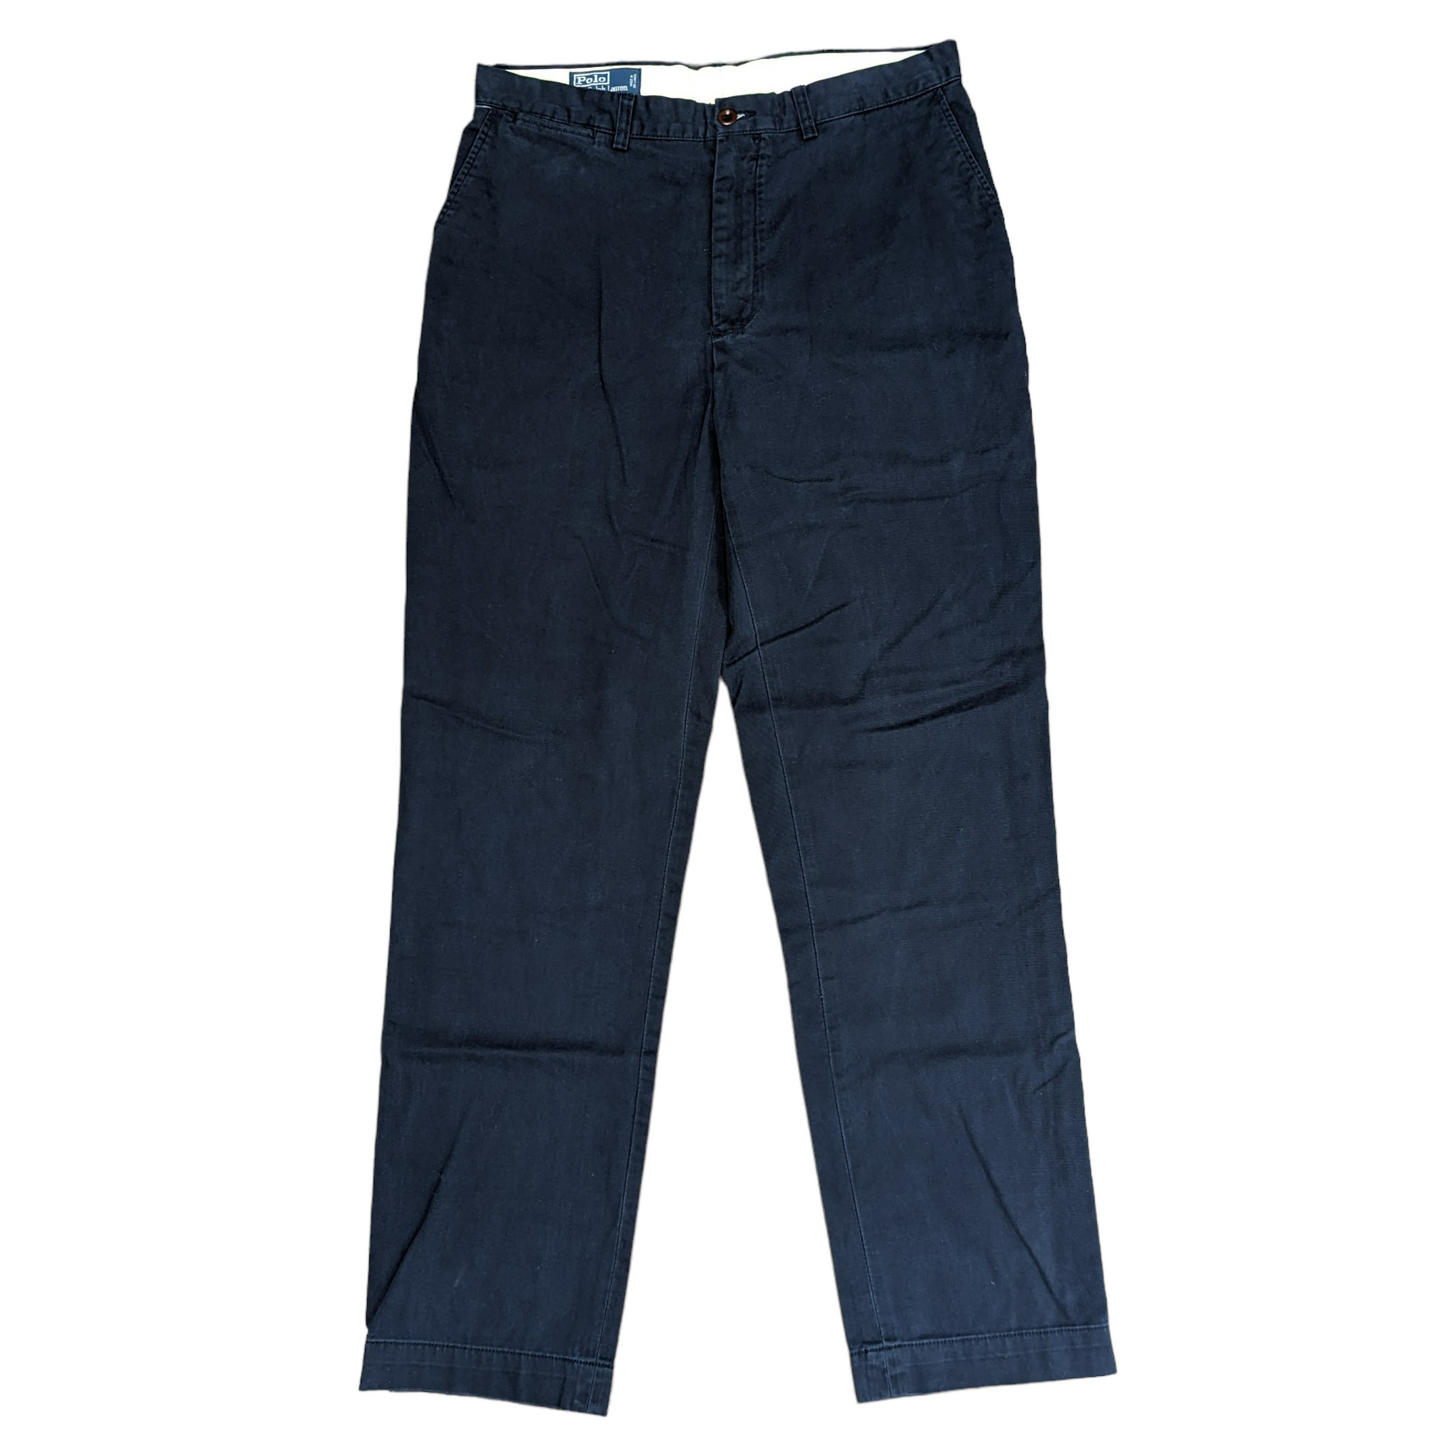 Ralph Lauren Prospect Pant Trousers W34 L34